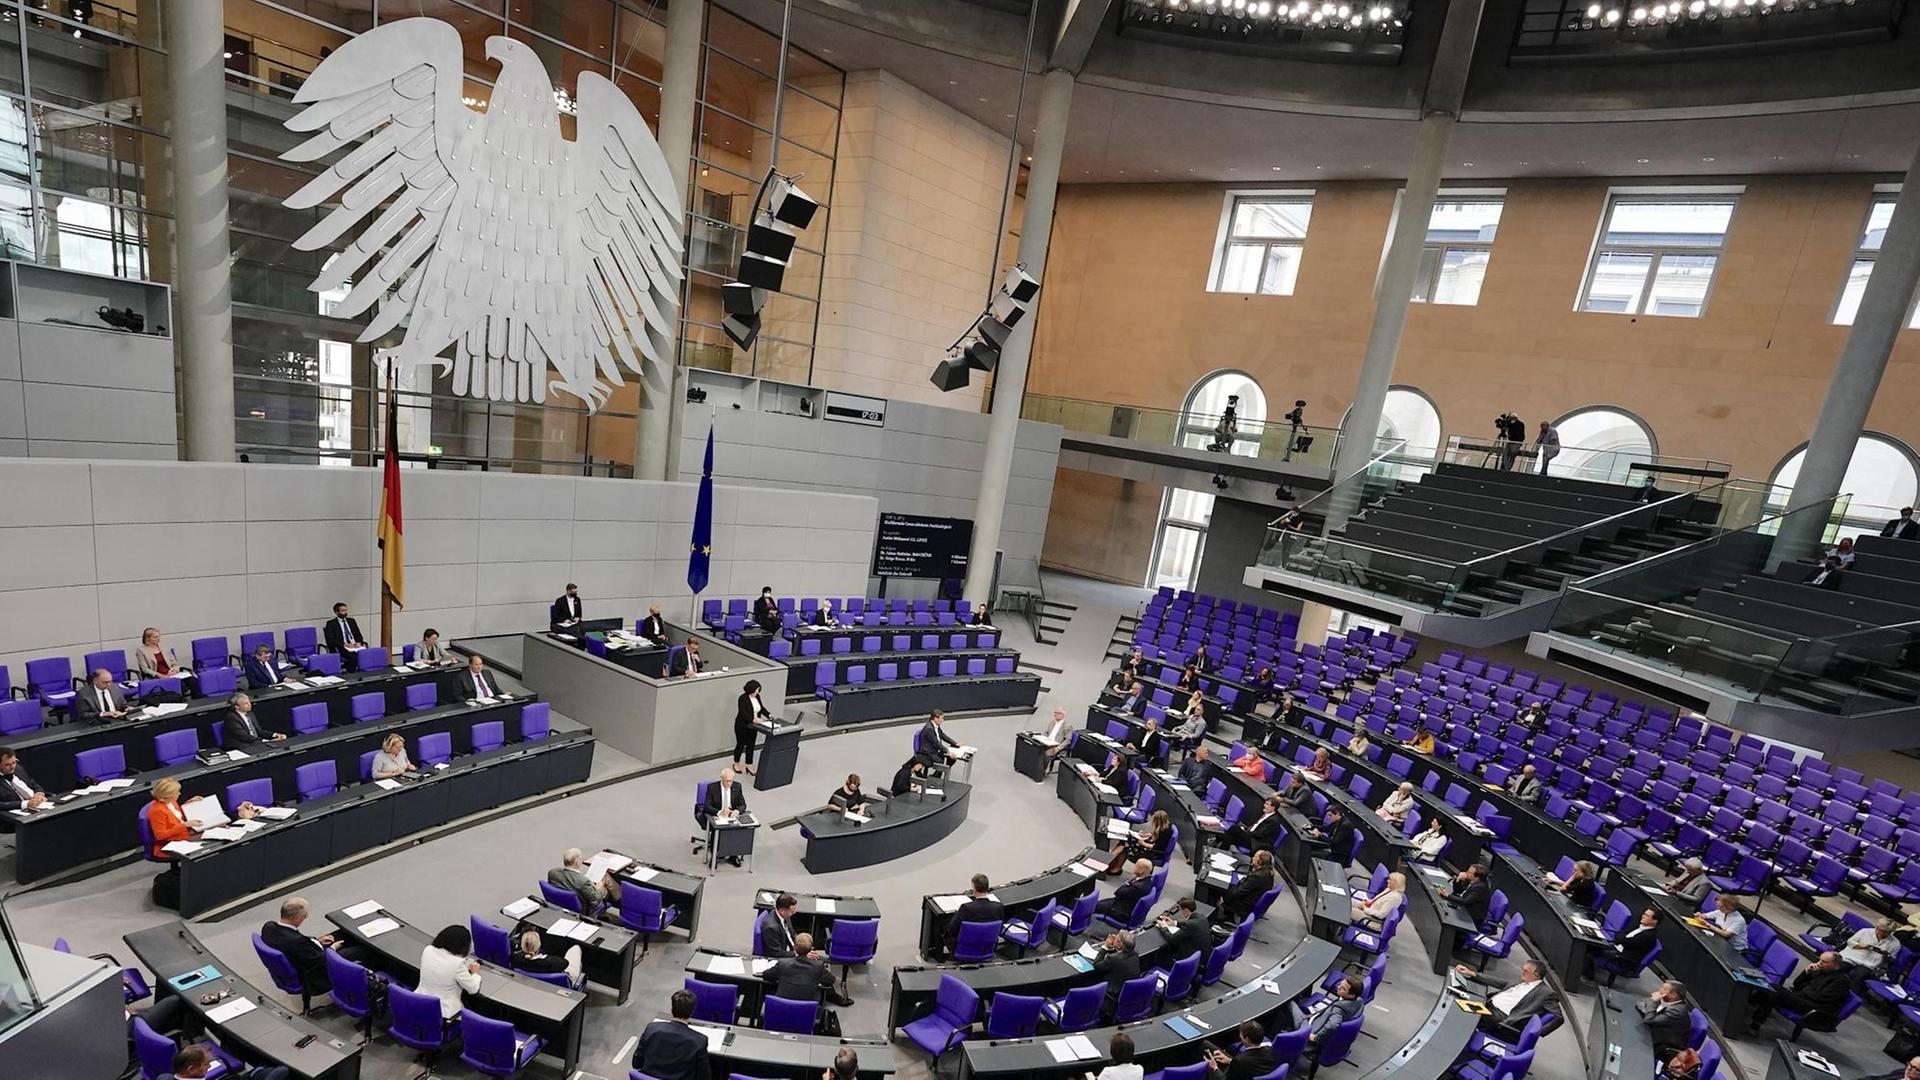 Der Plenarsaal, aufgenommen am 16.09.2020 bei der Generaldebatte zu Nachhaltigkeit im Bundestag